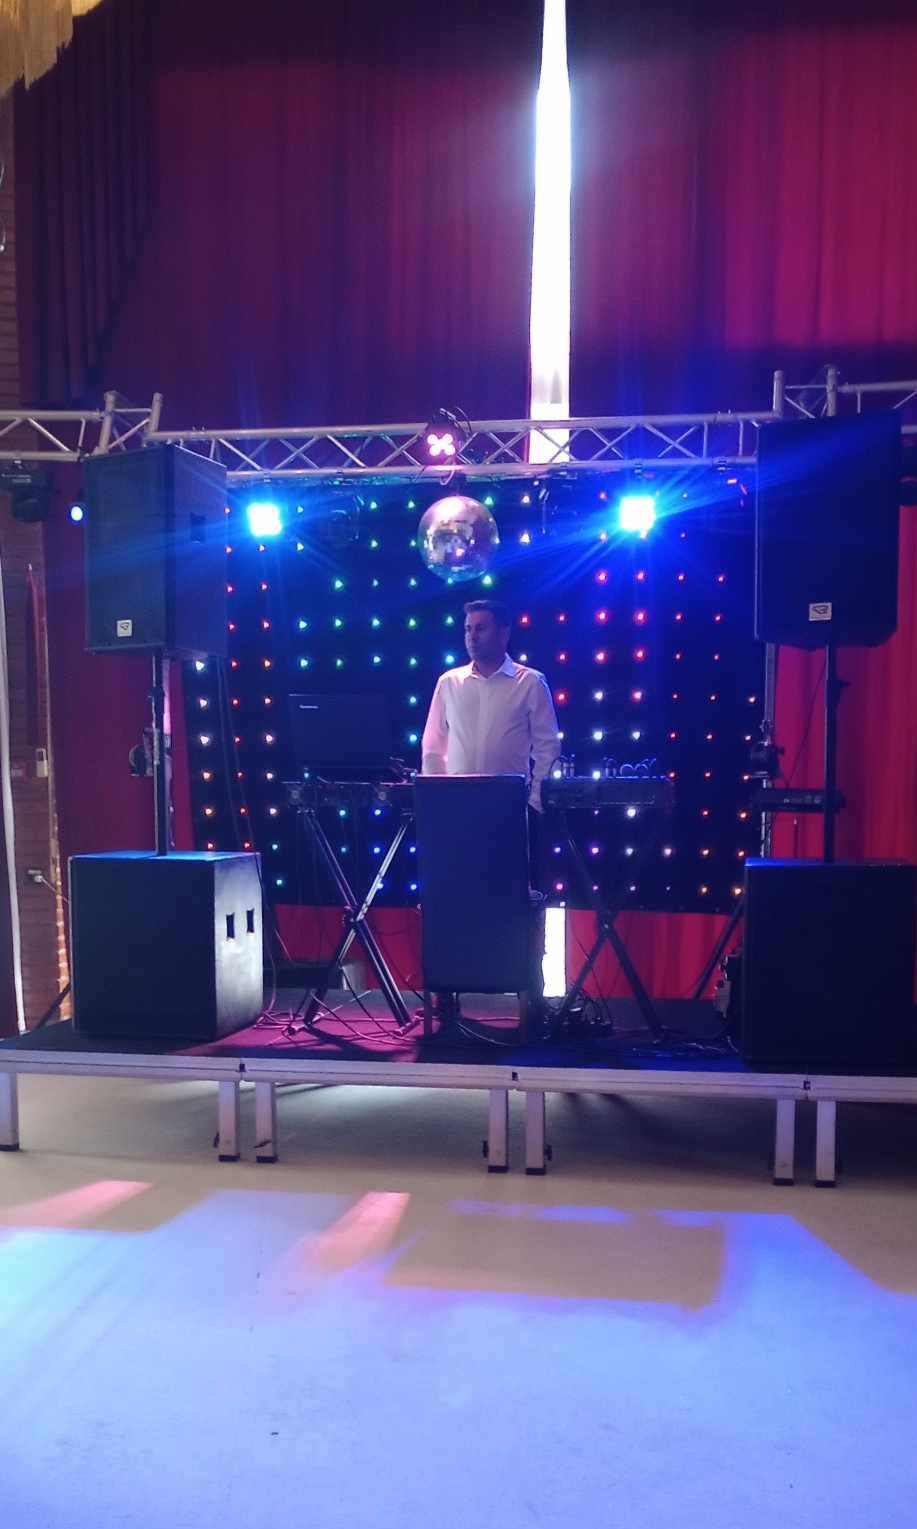 DJ Asigur sonorizare cu muzica pentru evenimente si diverse aniversari